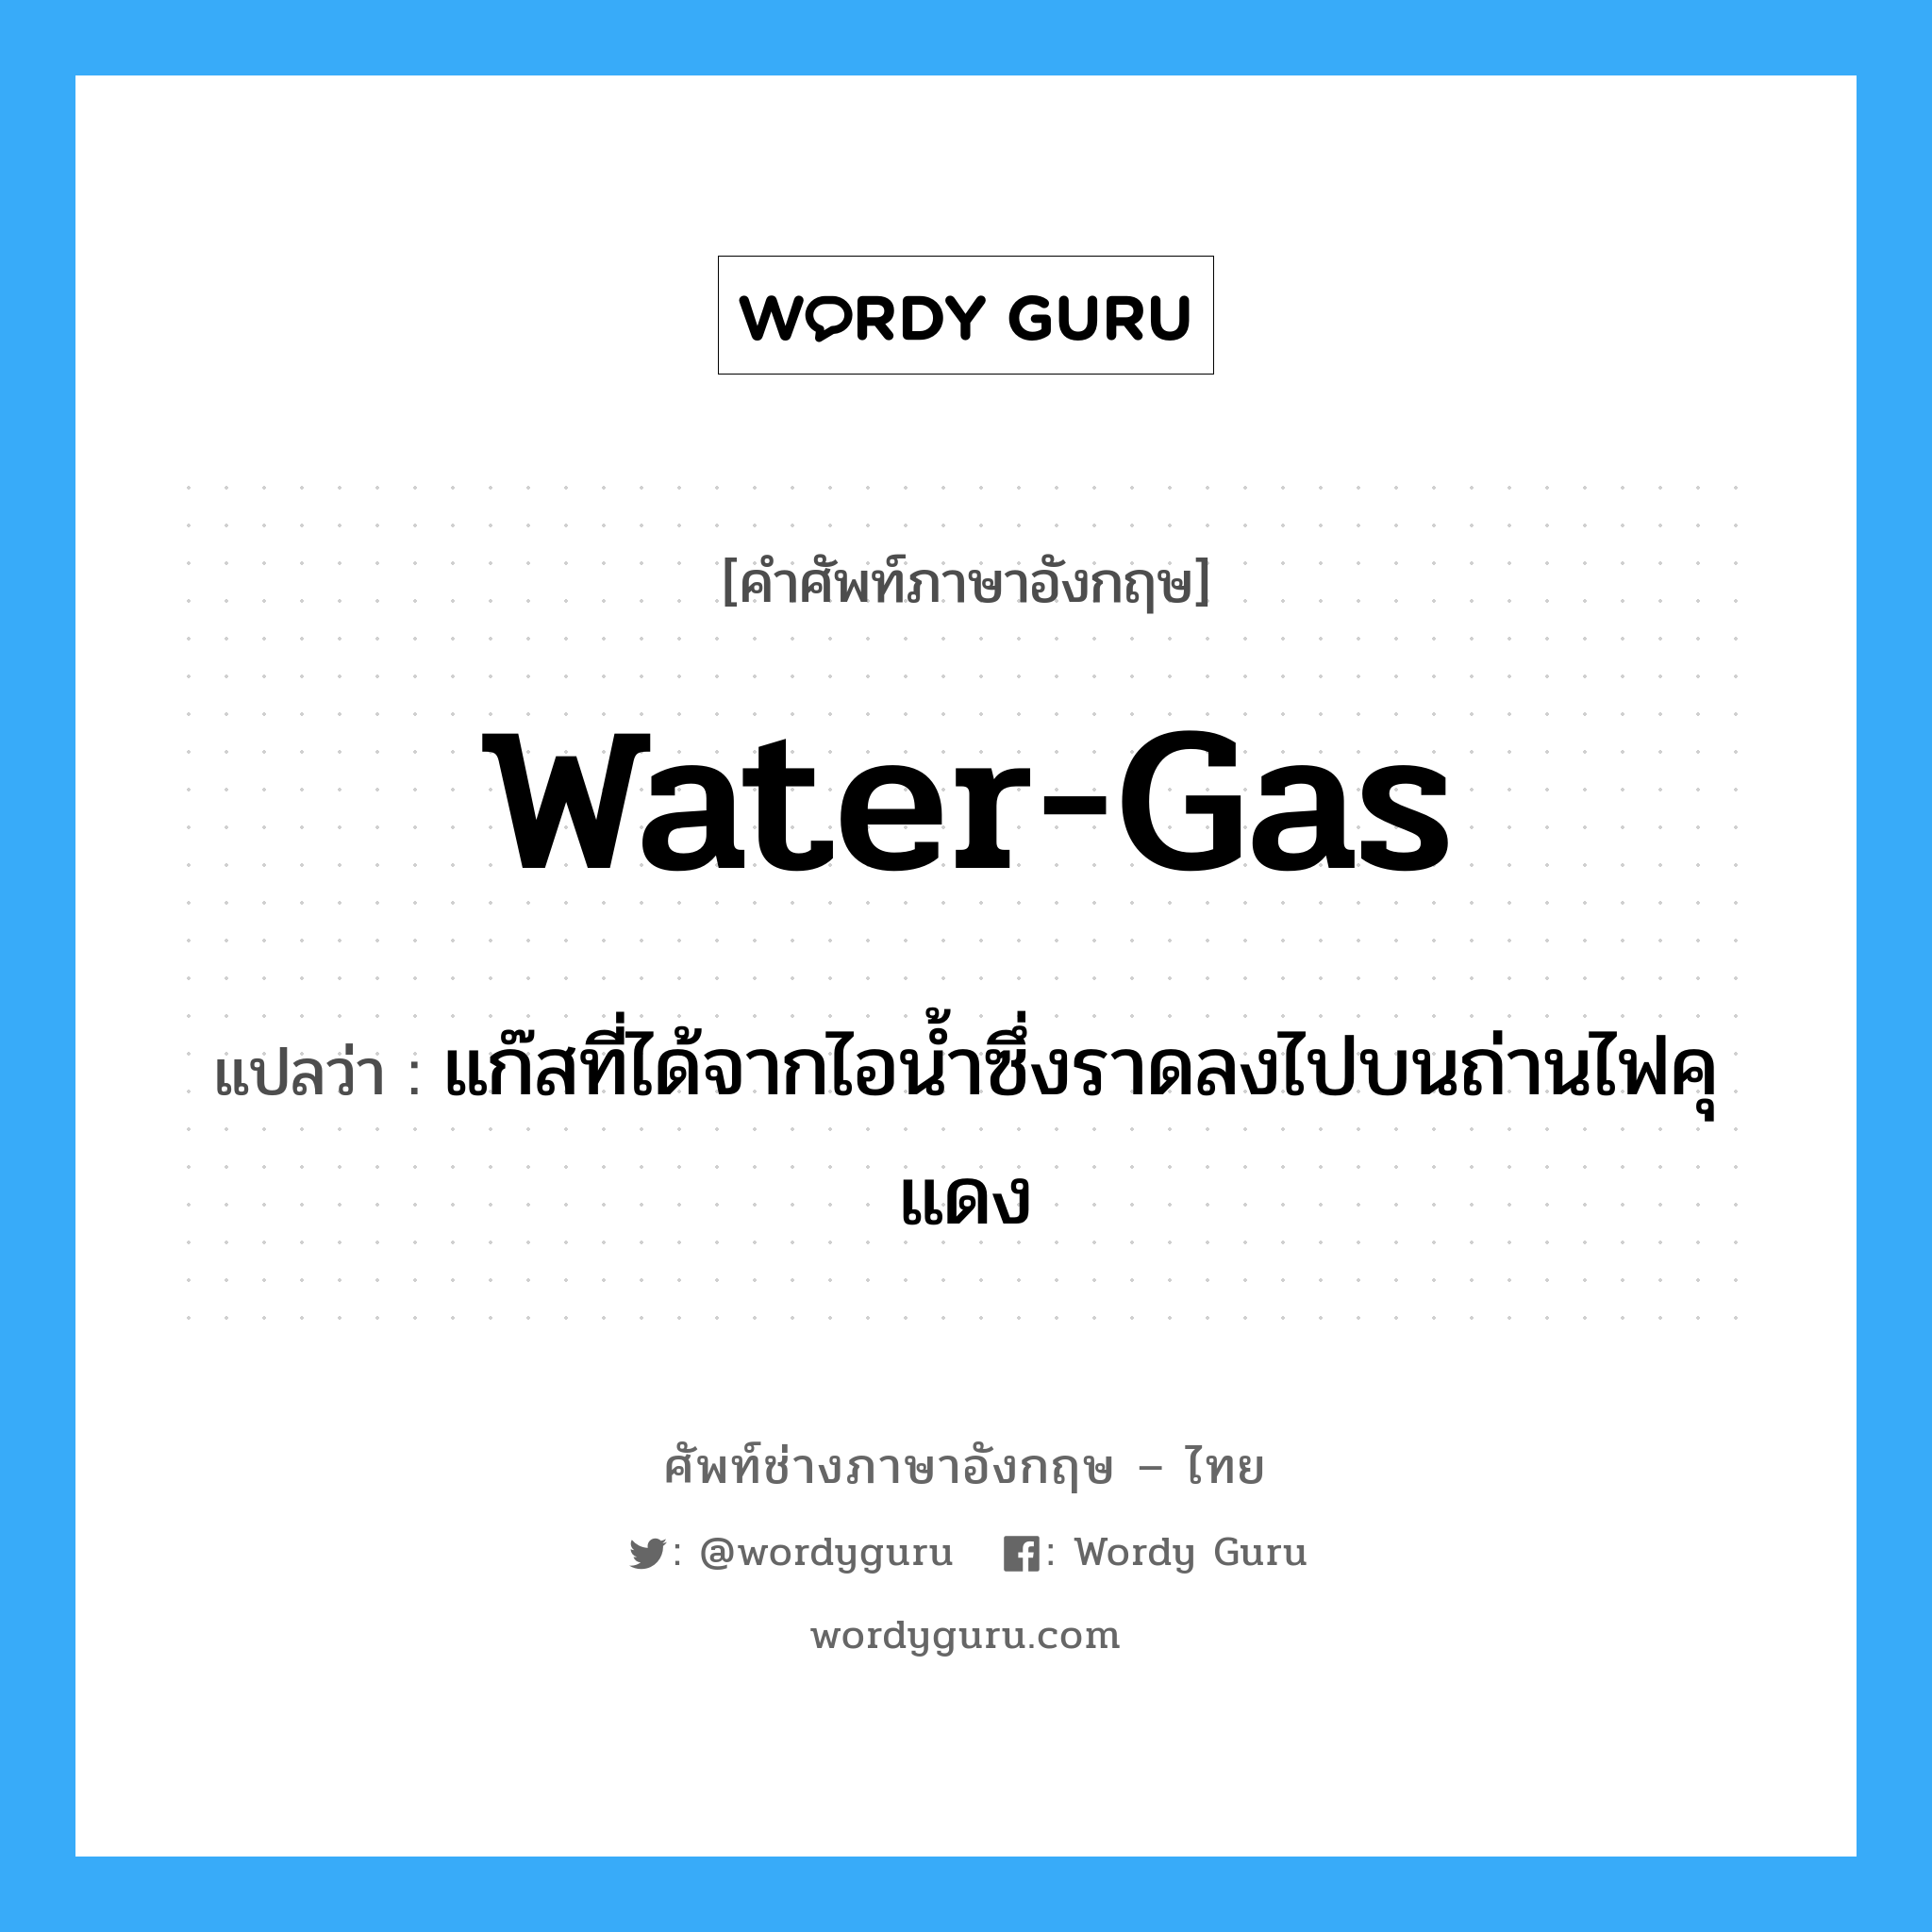 water-gas แปลว่า?, คำศัพท์ช่างภาษาอังกฤษ - ไทย water-gas คำศัพท์ภาษาอังกฤษ water-gas แปลว่า แก๊สที่ได้จากไอน้ำซึ่งราดลงไปบนถ่านไฟคุแดง